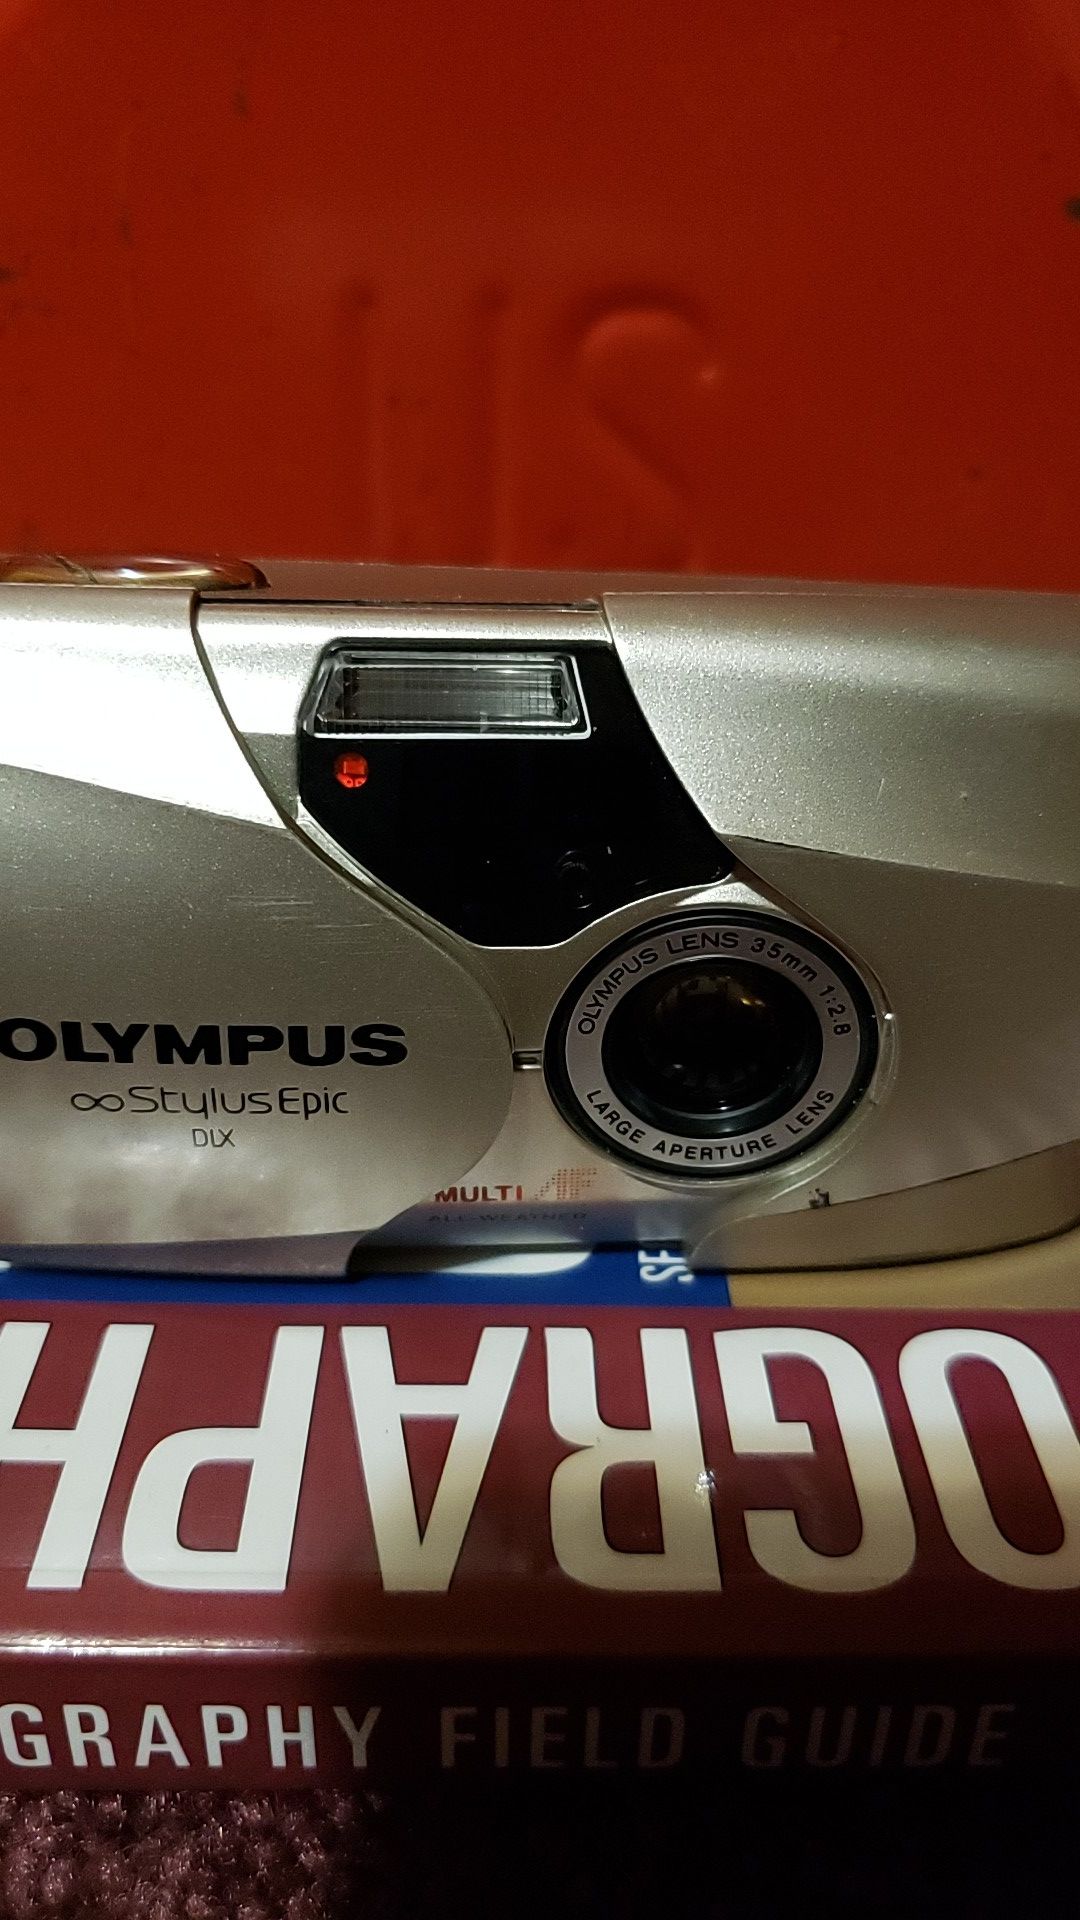 Olympus Stylus Epic dlx 35mm 2.8 camera mju ii